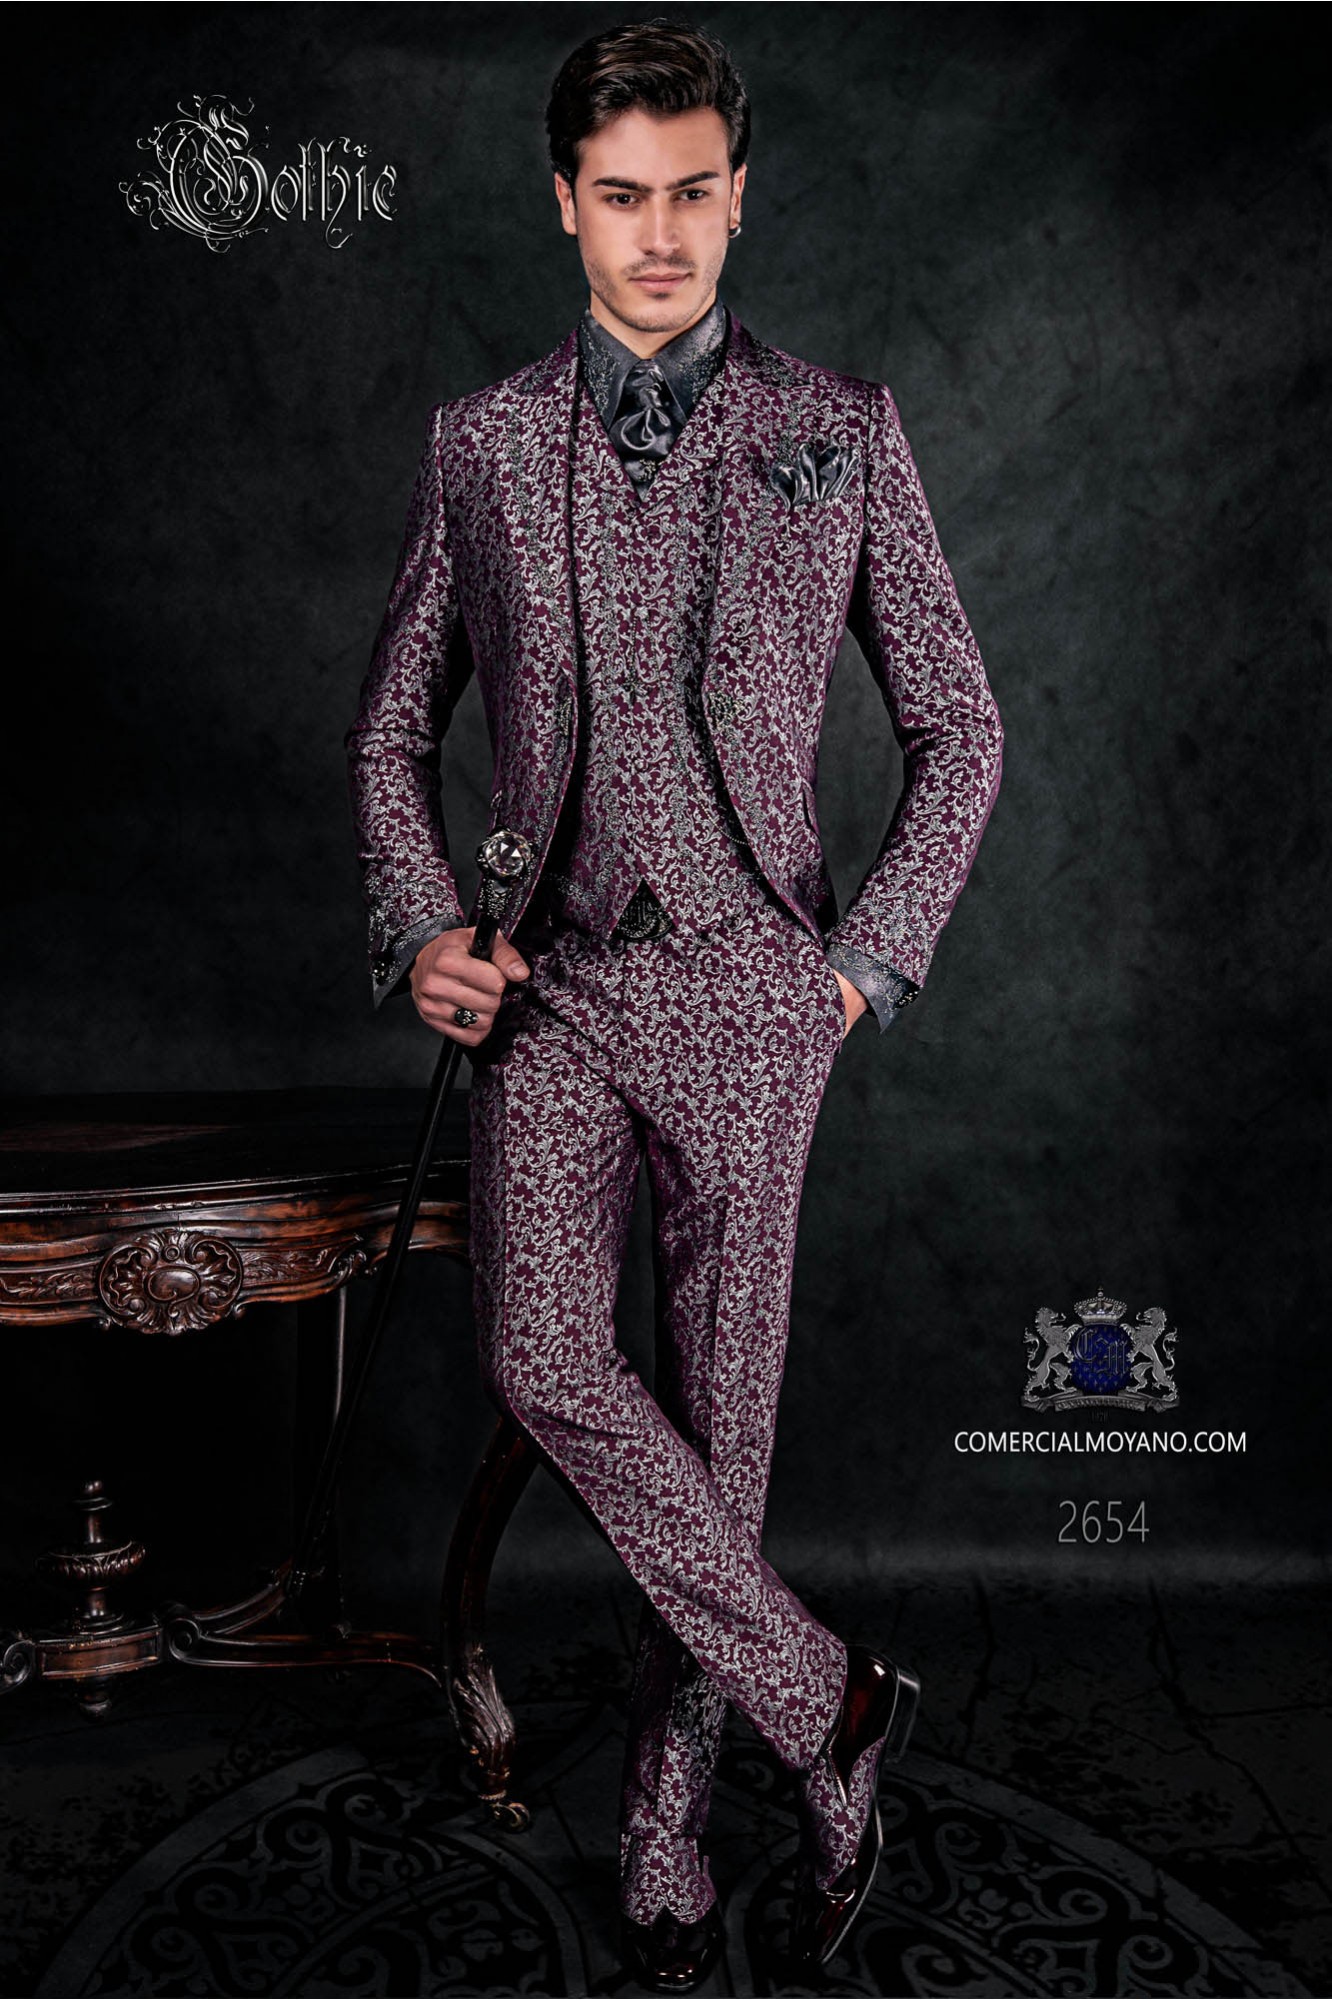 Traje de novio barroco, levita de época en tejido jacquard plata y púrpura con bordados plateados modelo: 2654 Mario Moyano colección Barroco